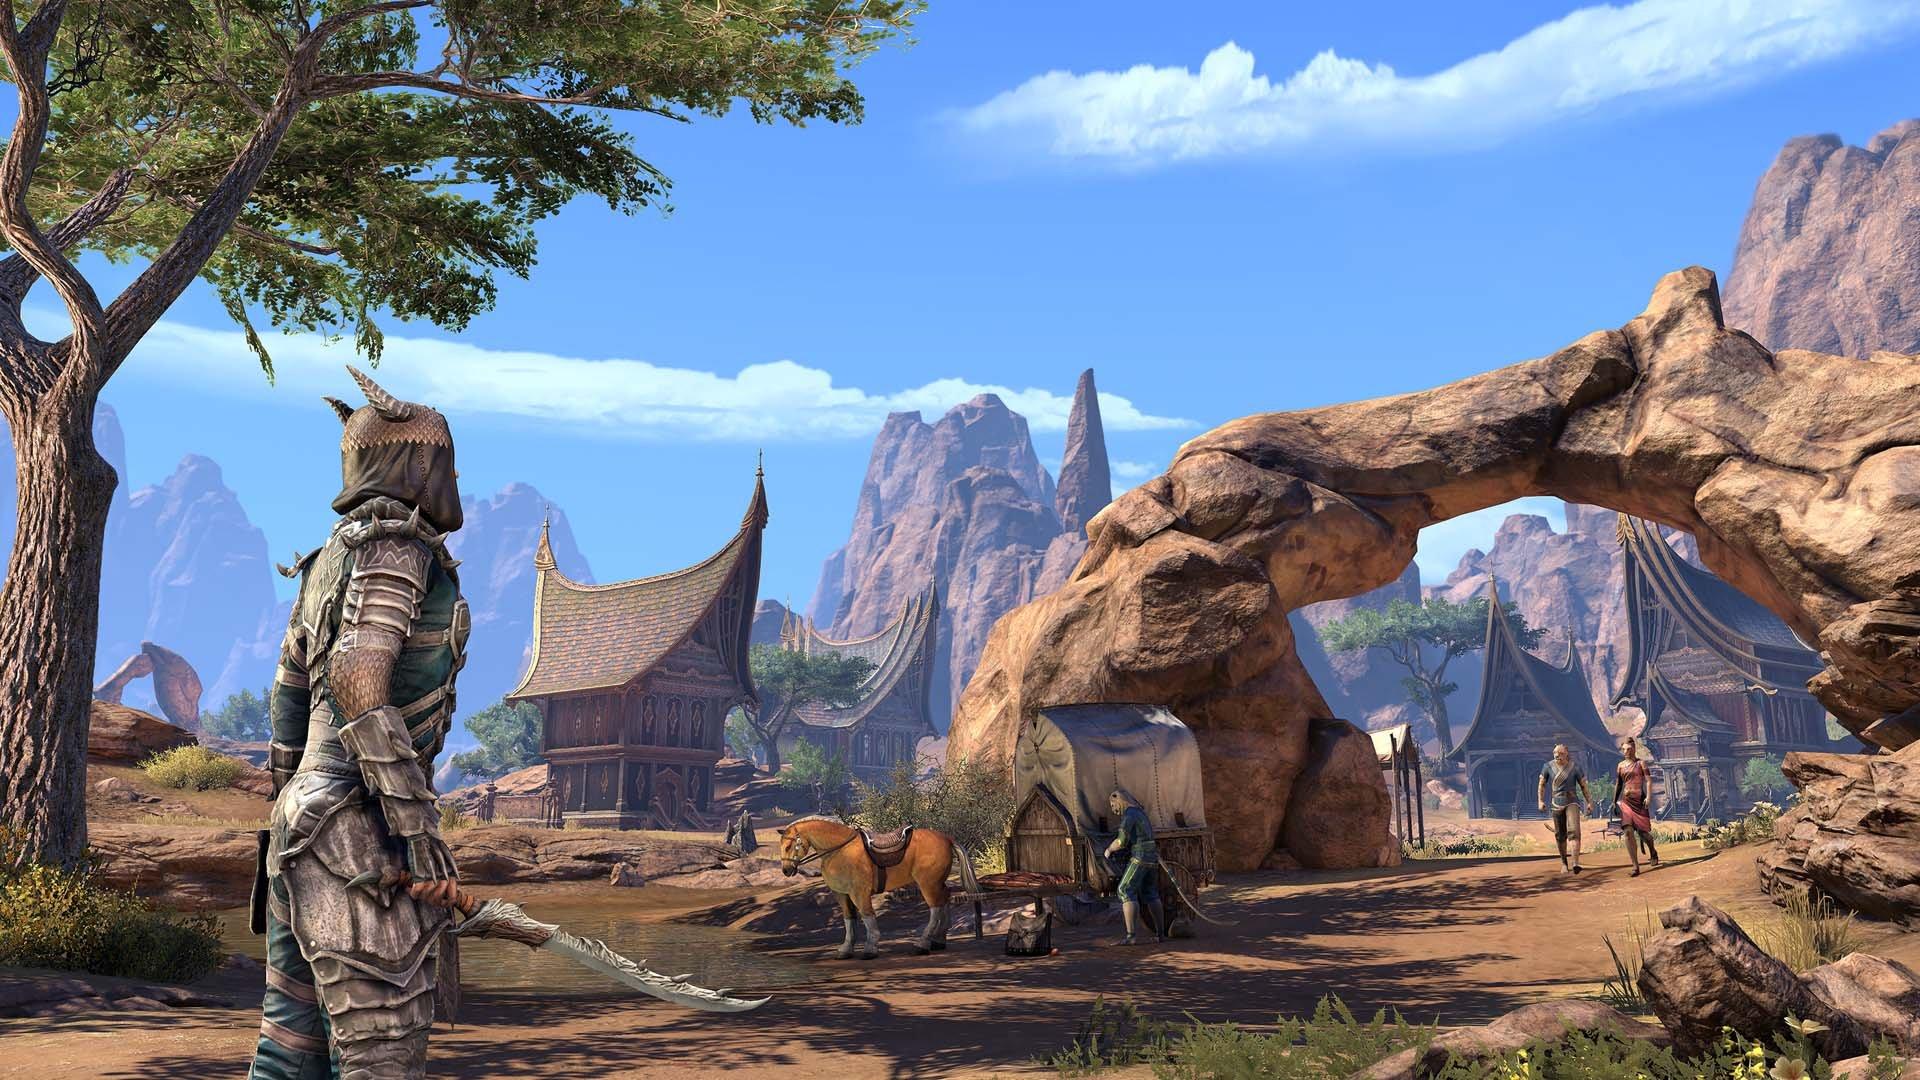 The Elder Scrolls Online Returns to Xbox Cloud Gaming - The Elder Scrolls  Online